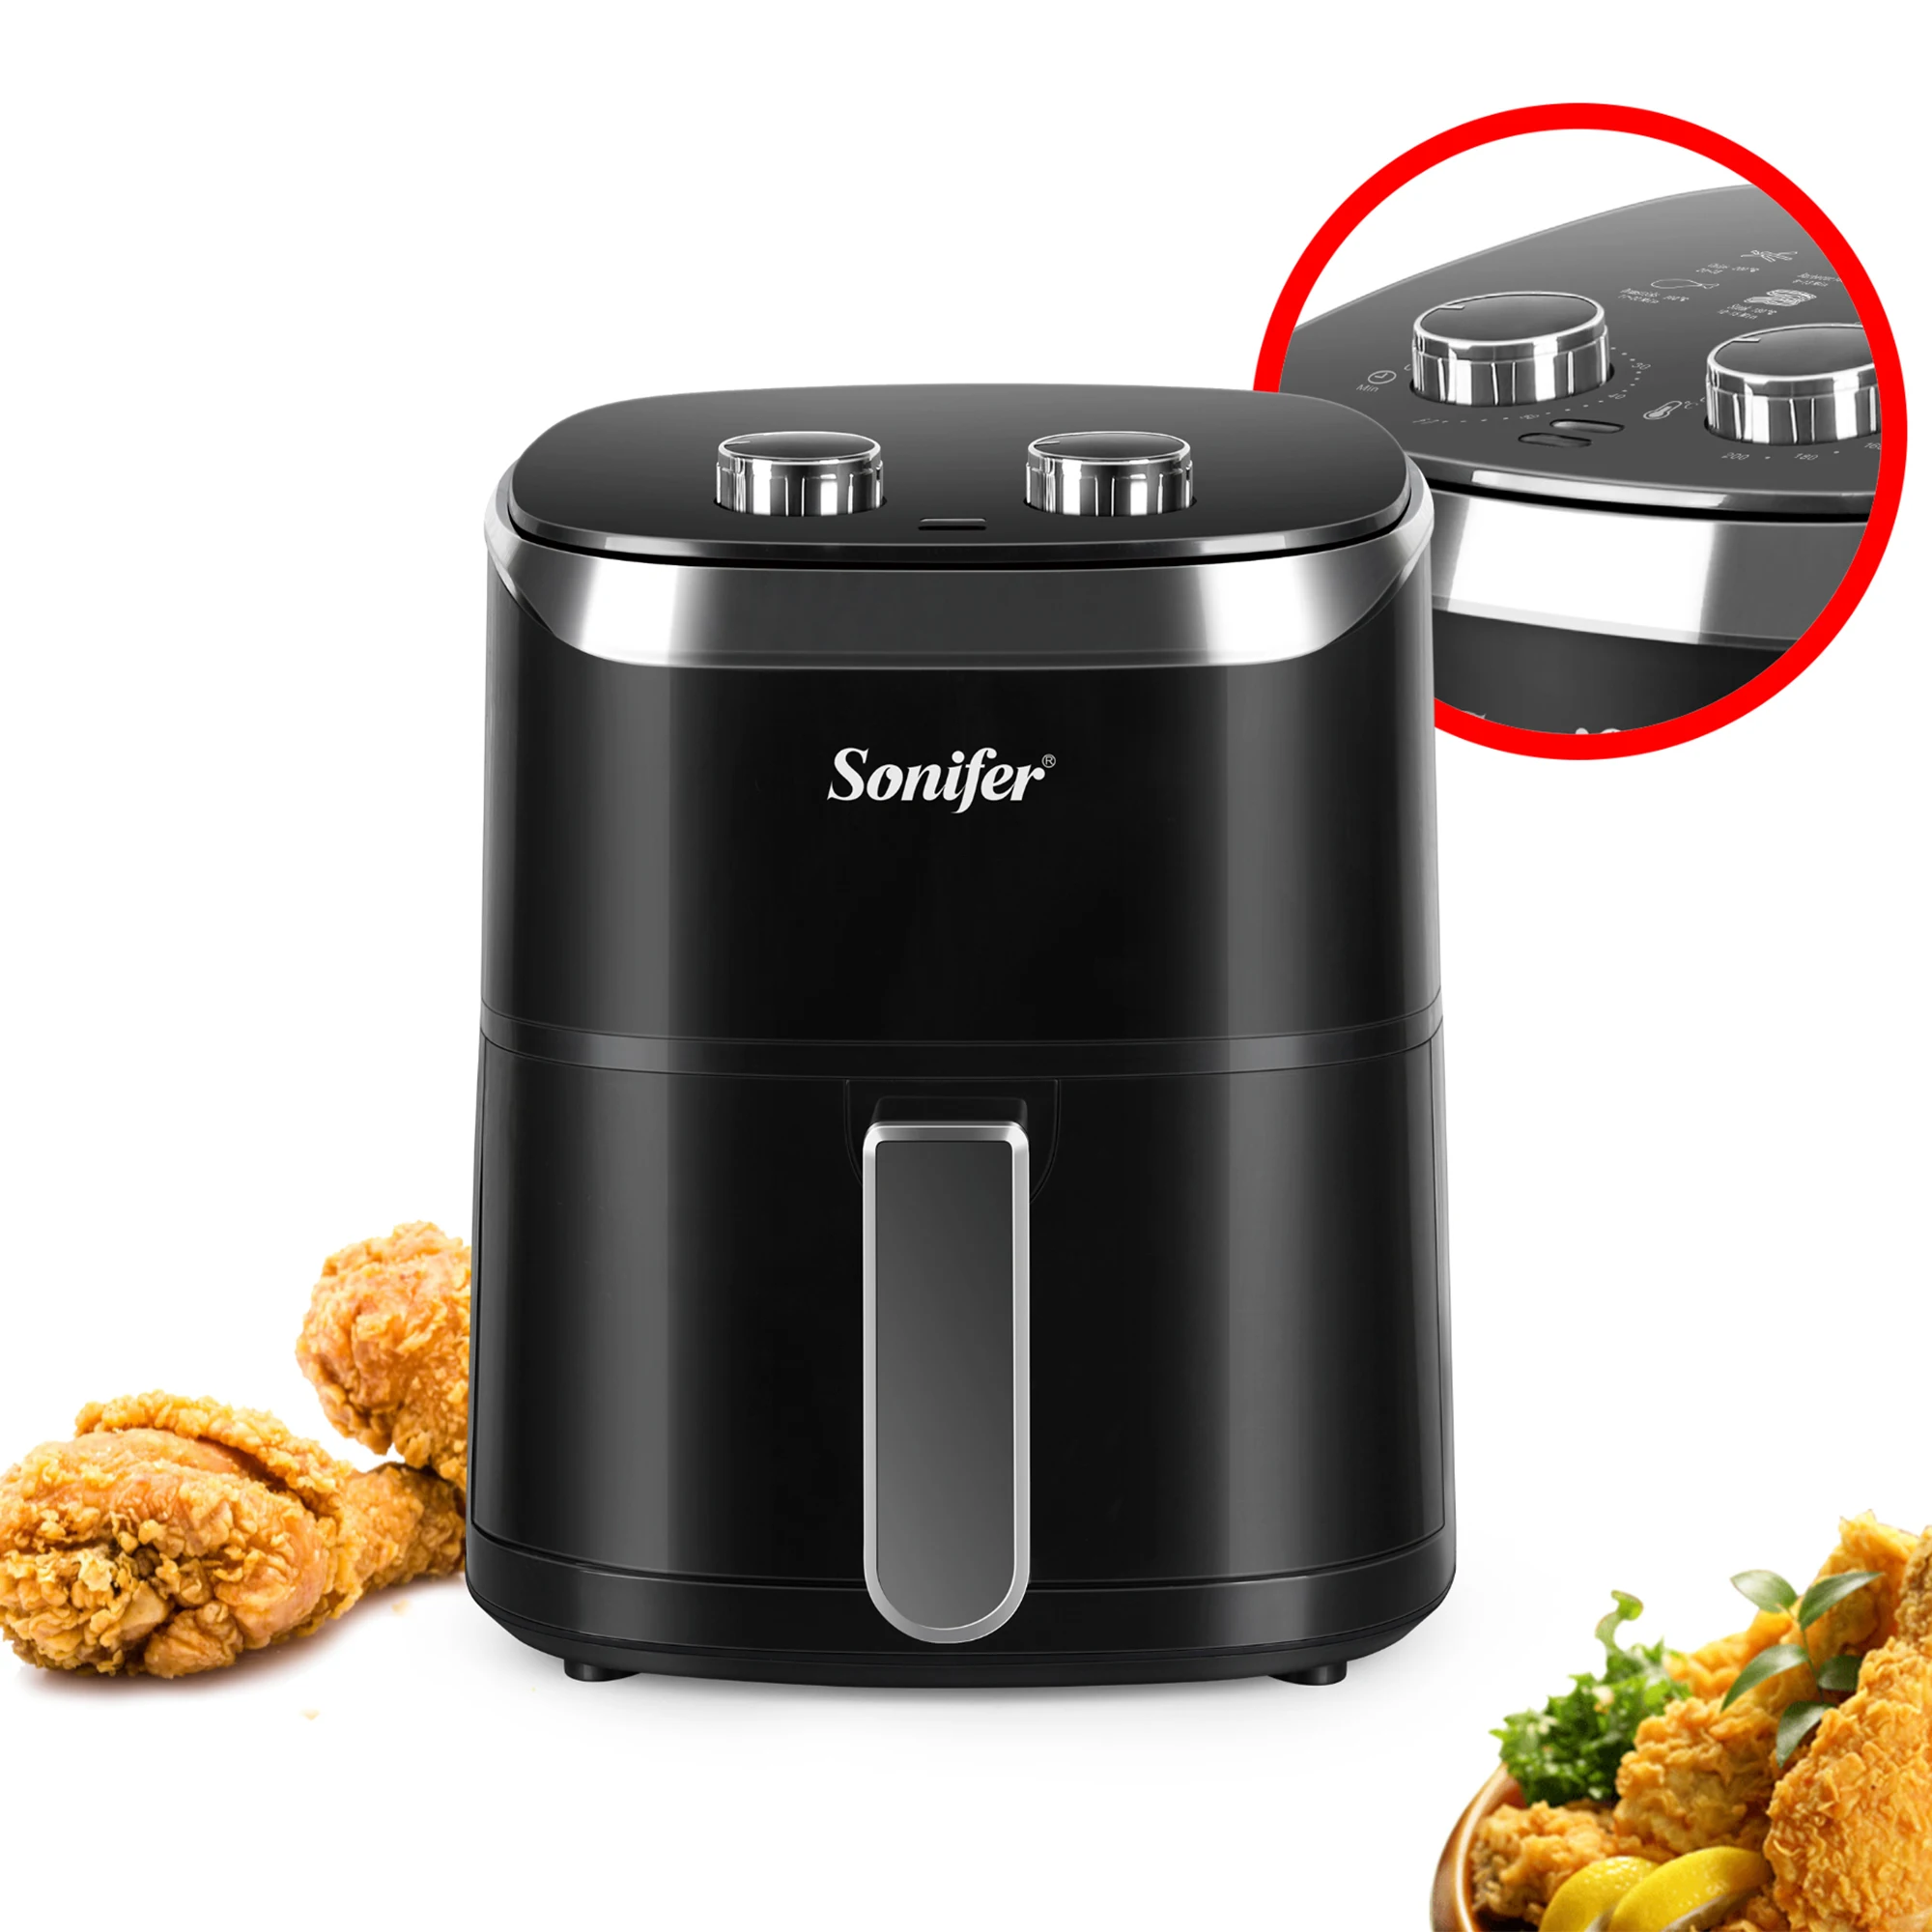 

Sonifer 1400 Вт электрическая фритюрница 360 л духовка антипригарная корзина 220 ° функции выпечки выпечка/гриль фритюрница без масляной соли в